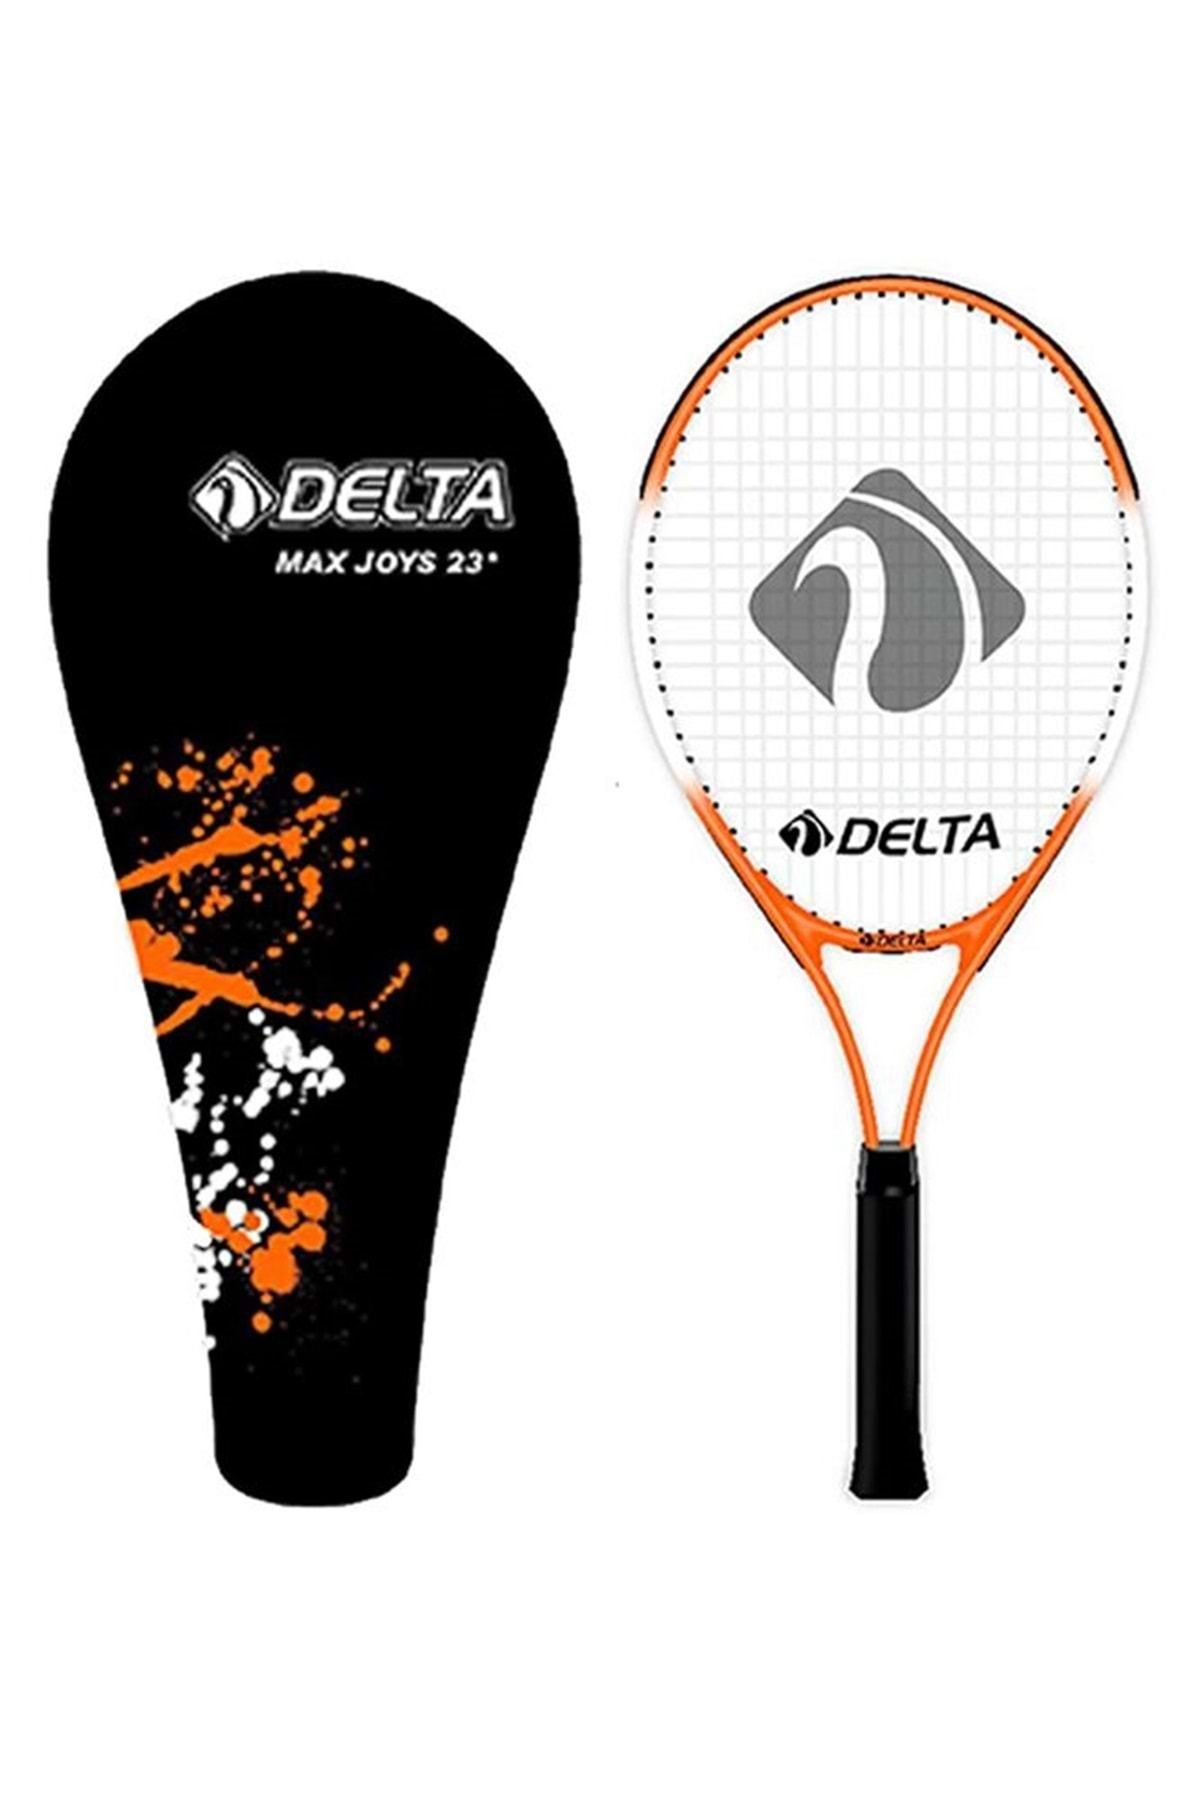 Delta Max Joys Deluxe Tenis Çantası (KOMPLE ÇANTALI) 23 Inç Çocuk Tenis Raketi Turuncu